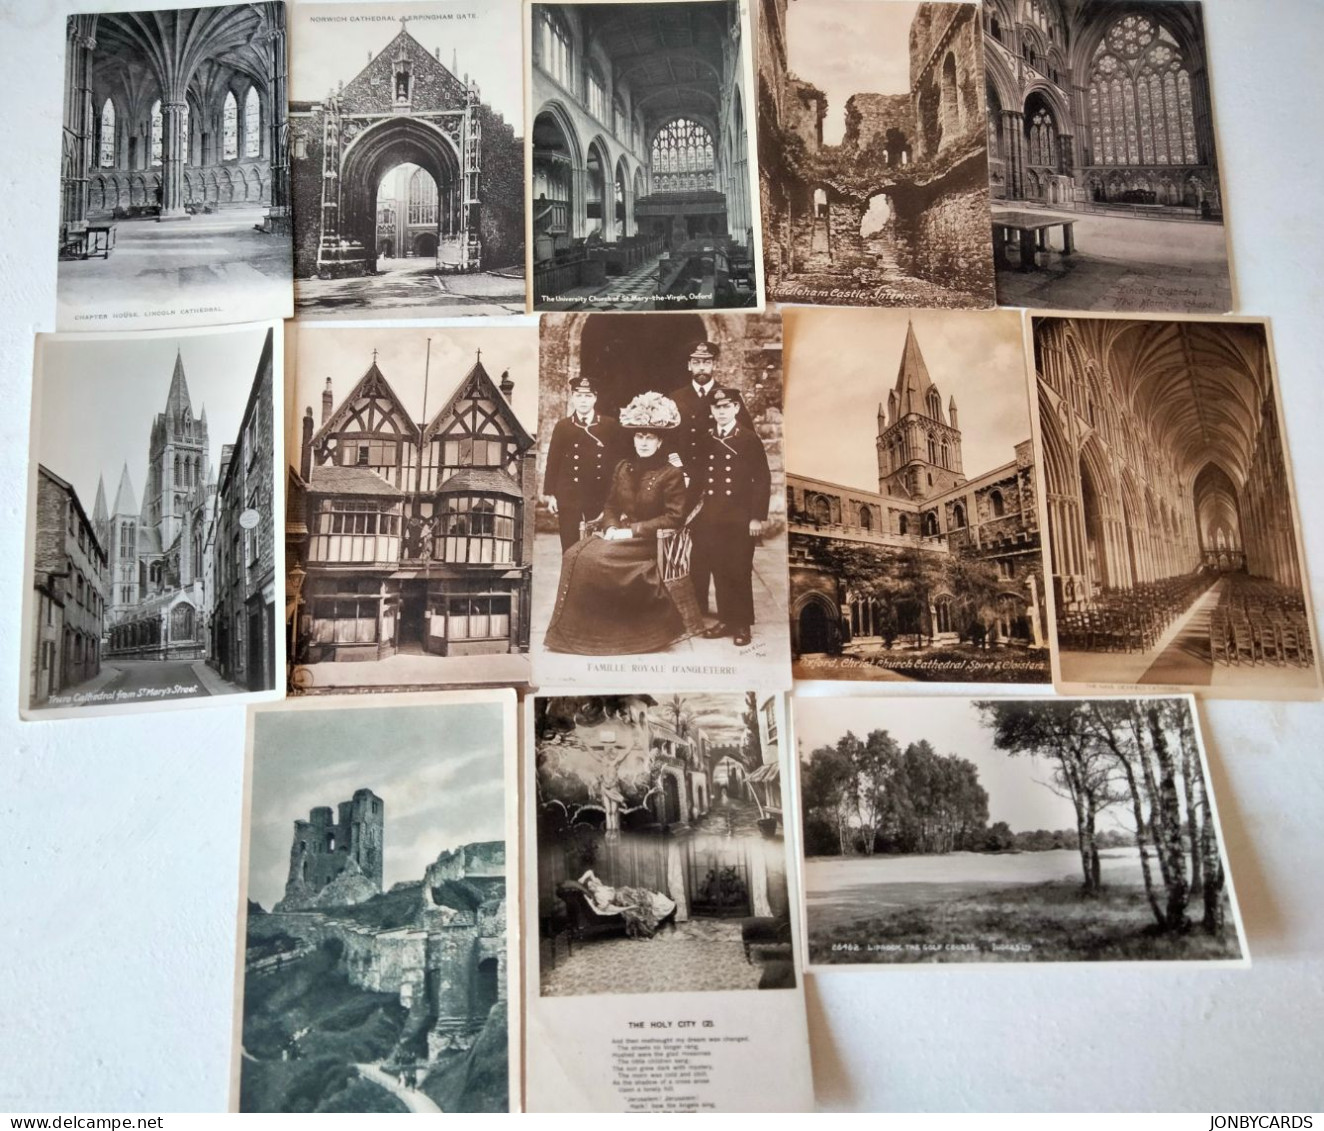 Dèstockage/Liquidation-Lot of 96 United Kingdom Vintage  Postcards # 37